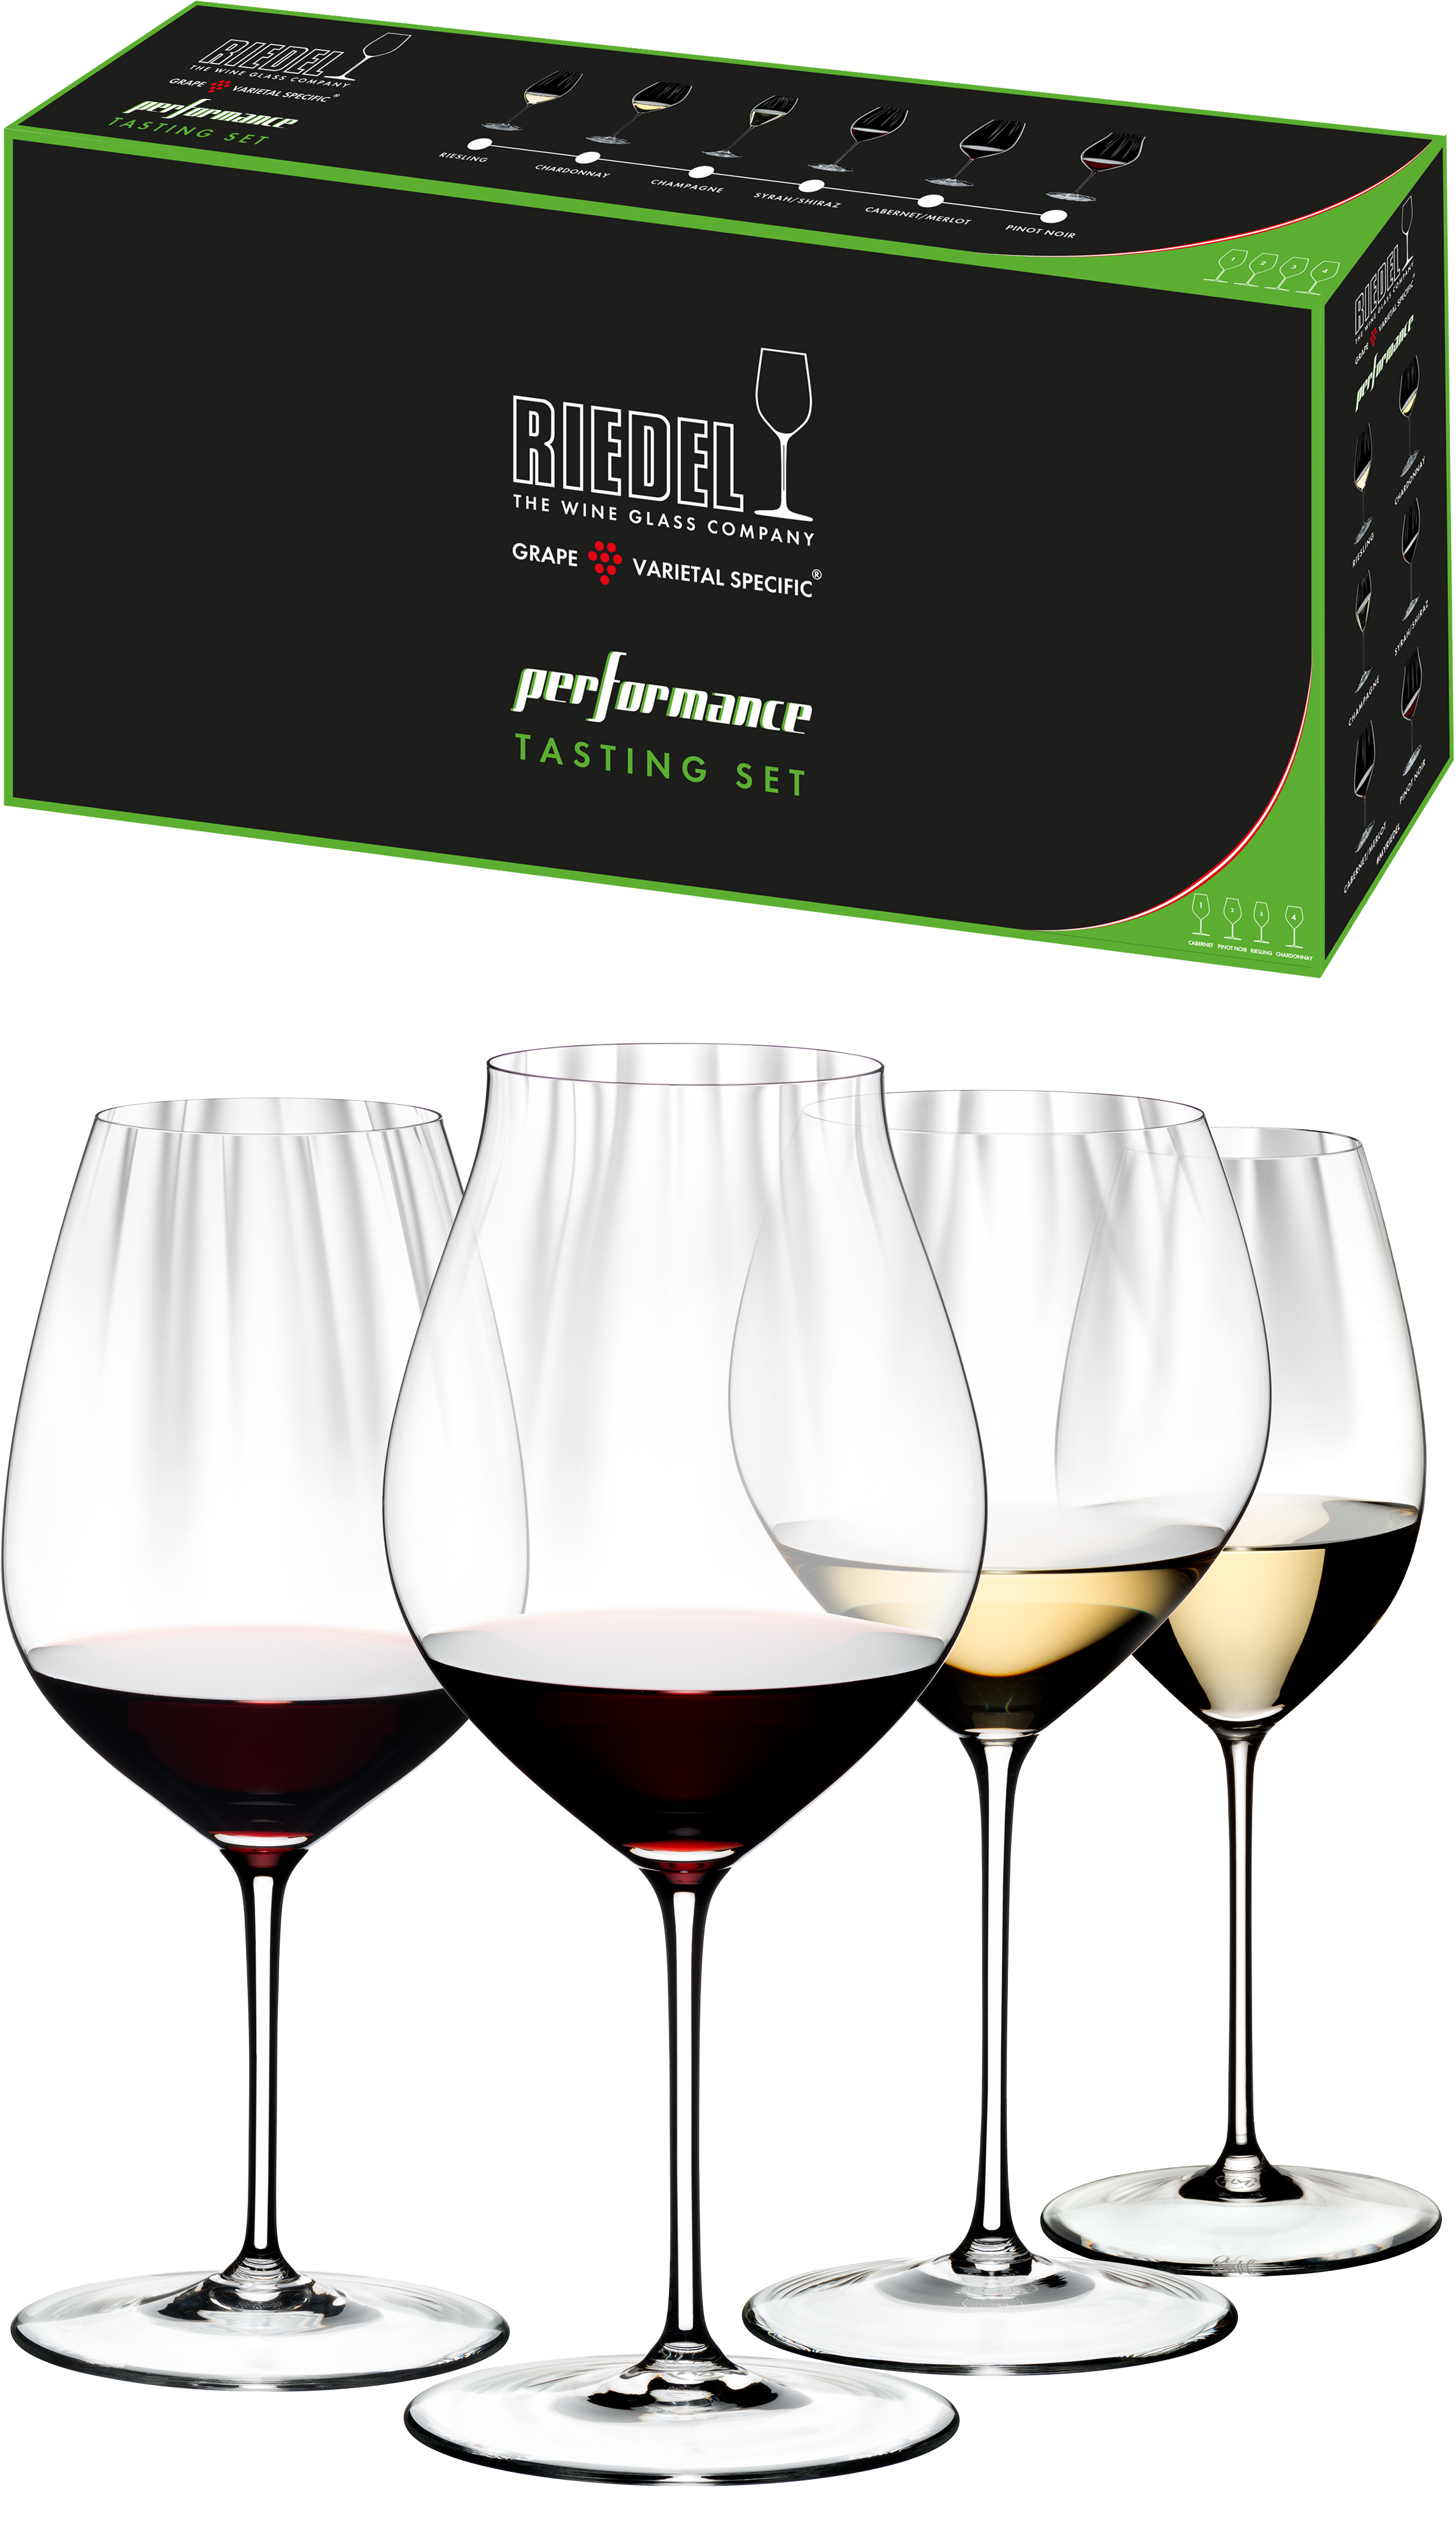 Riedel Performance Tasting Set wijnglazen (set van 4 voor € 89,90)